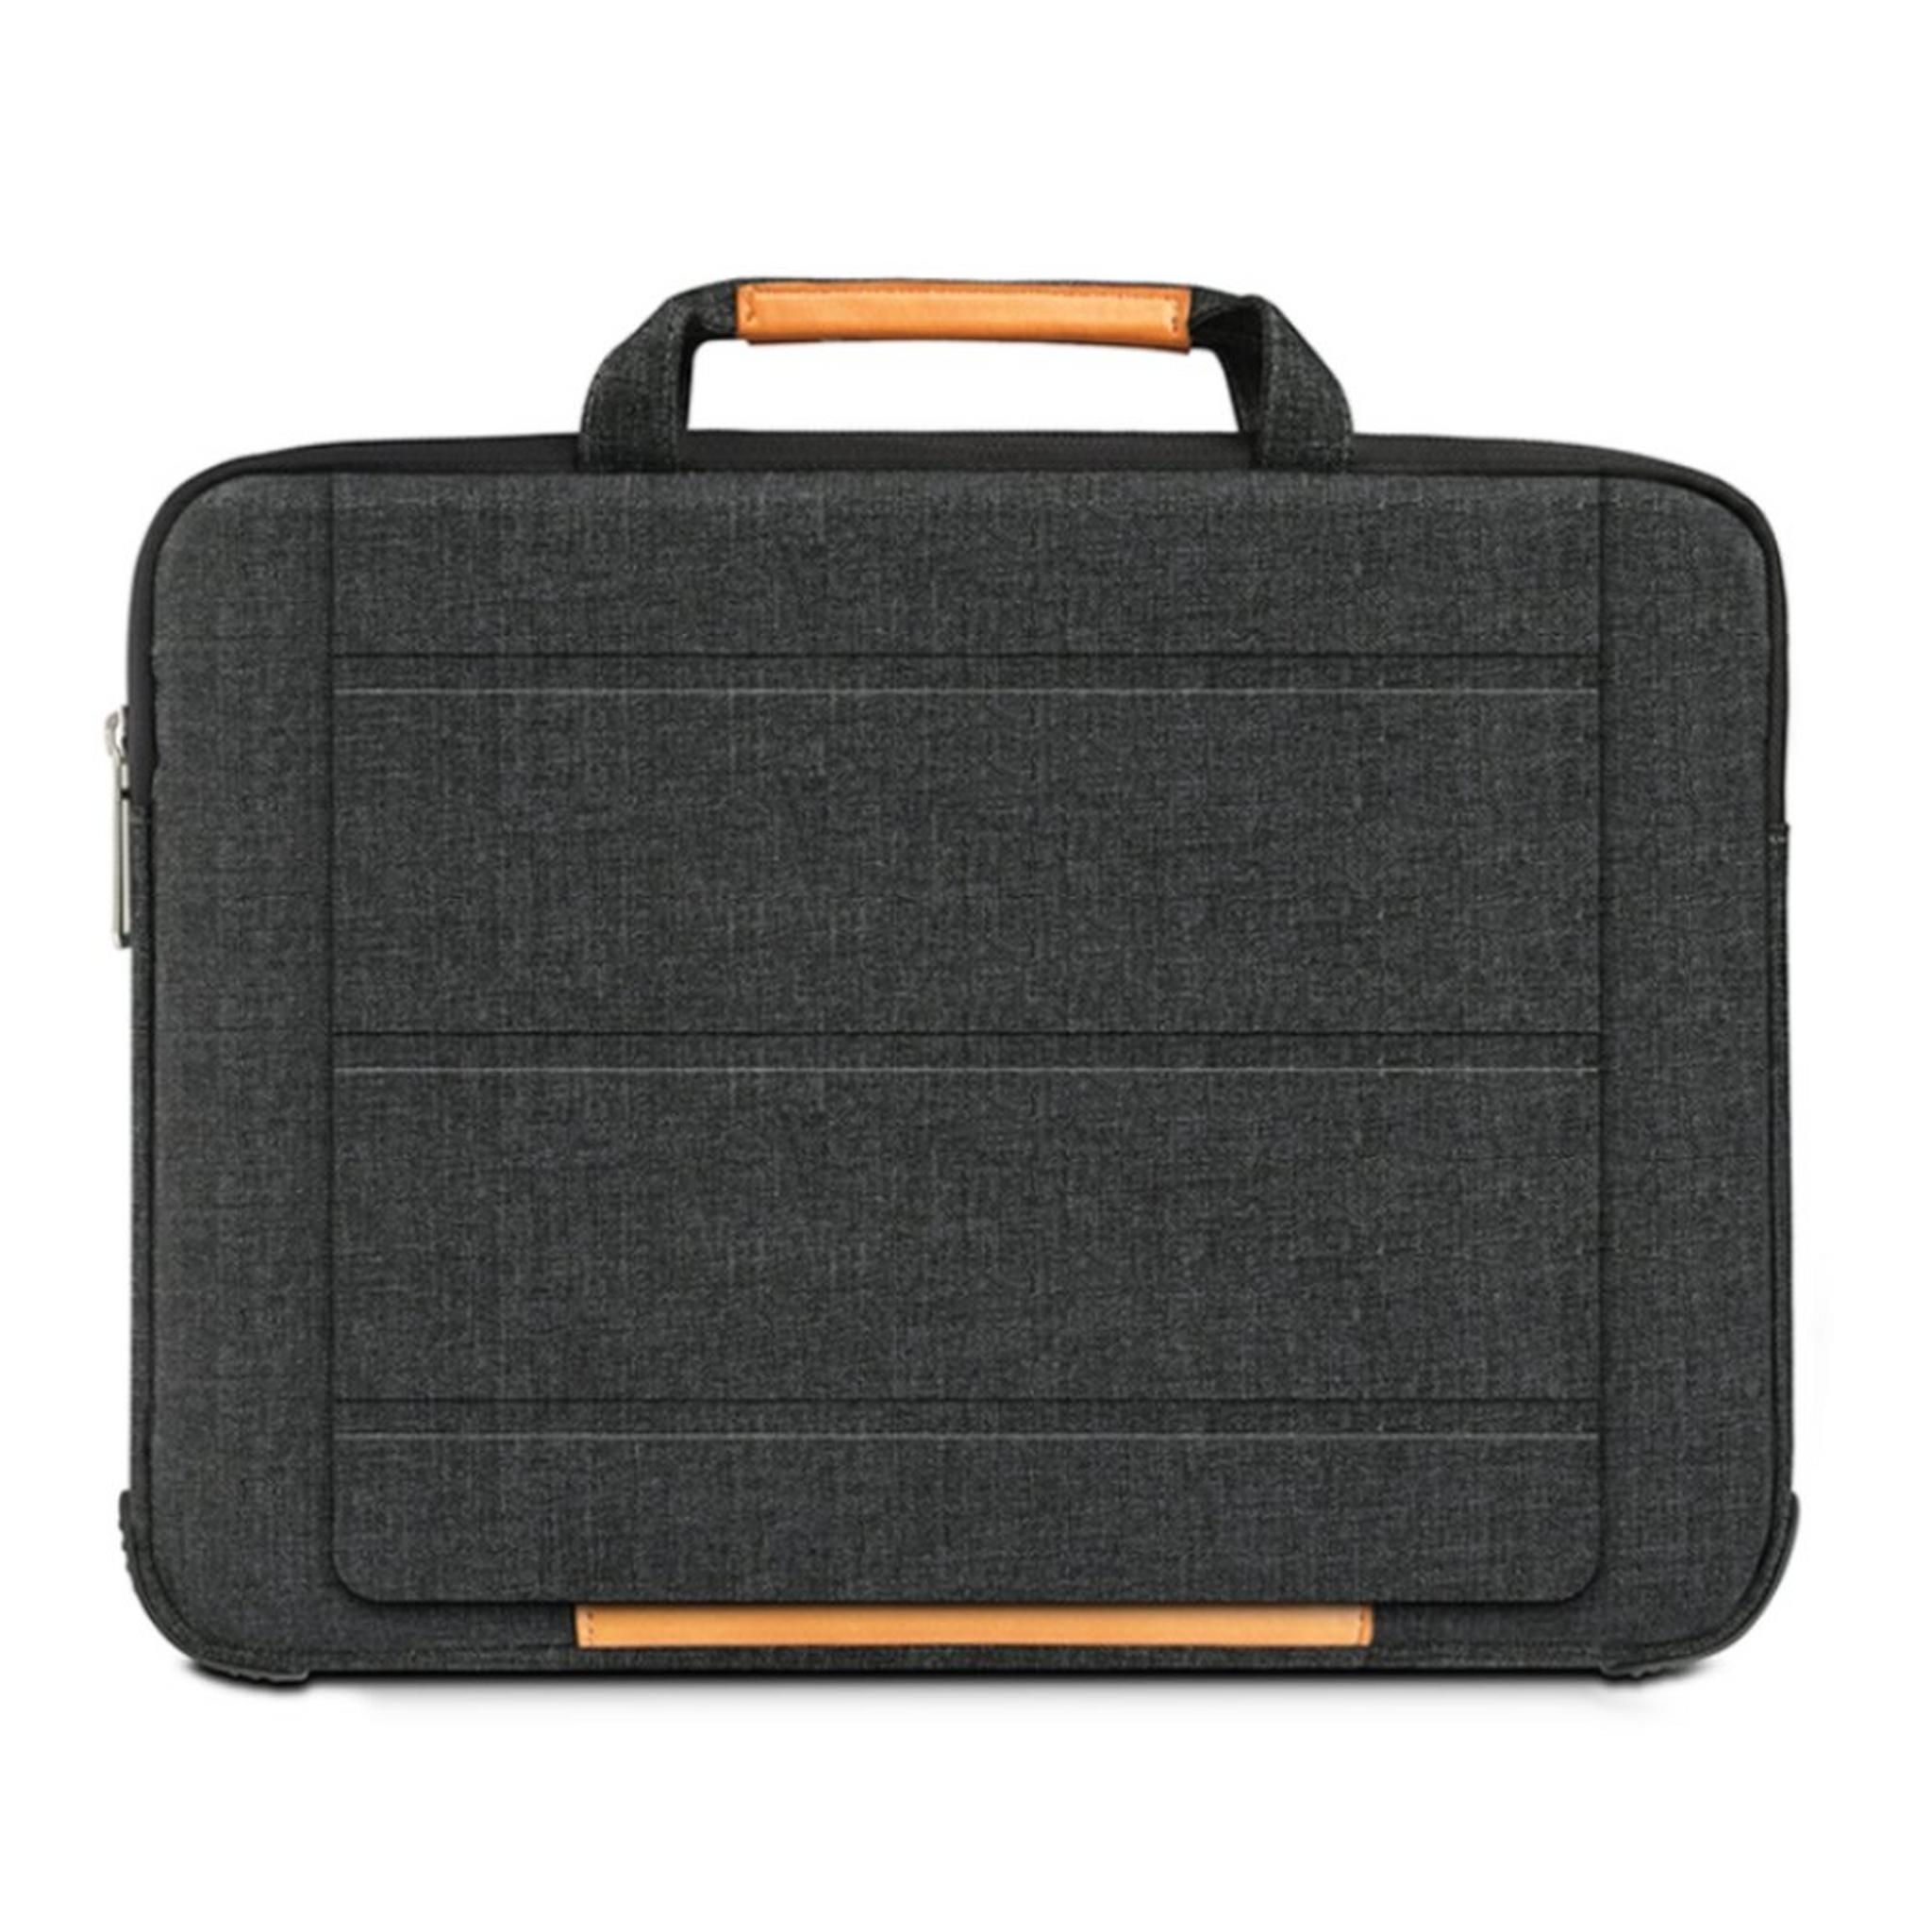 حقيبة اللابتوب الذكية لماك بوك آير بحجم 15.4 بوصة من ويو - أسود